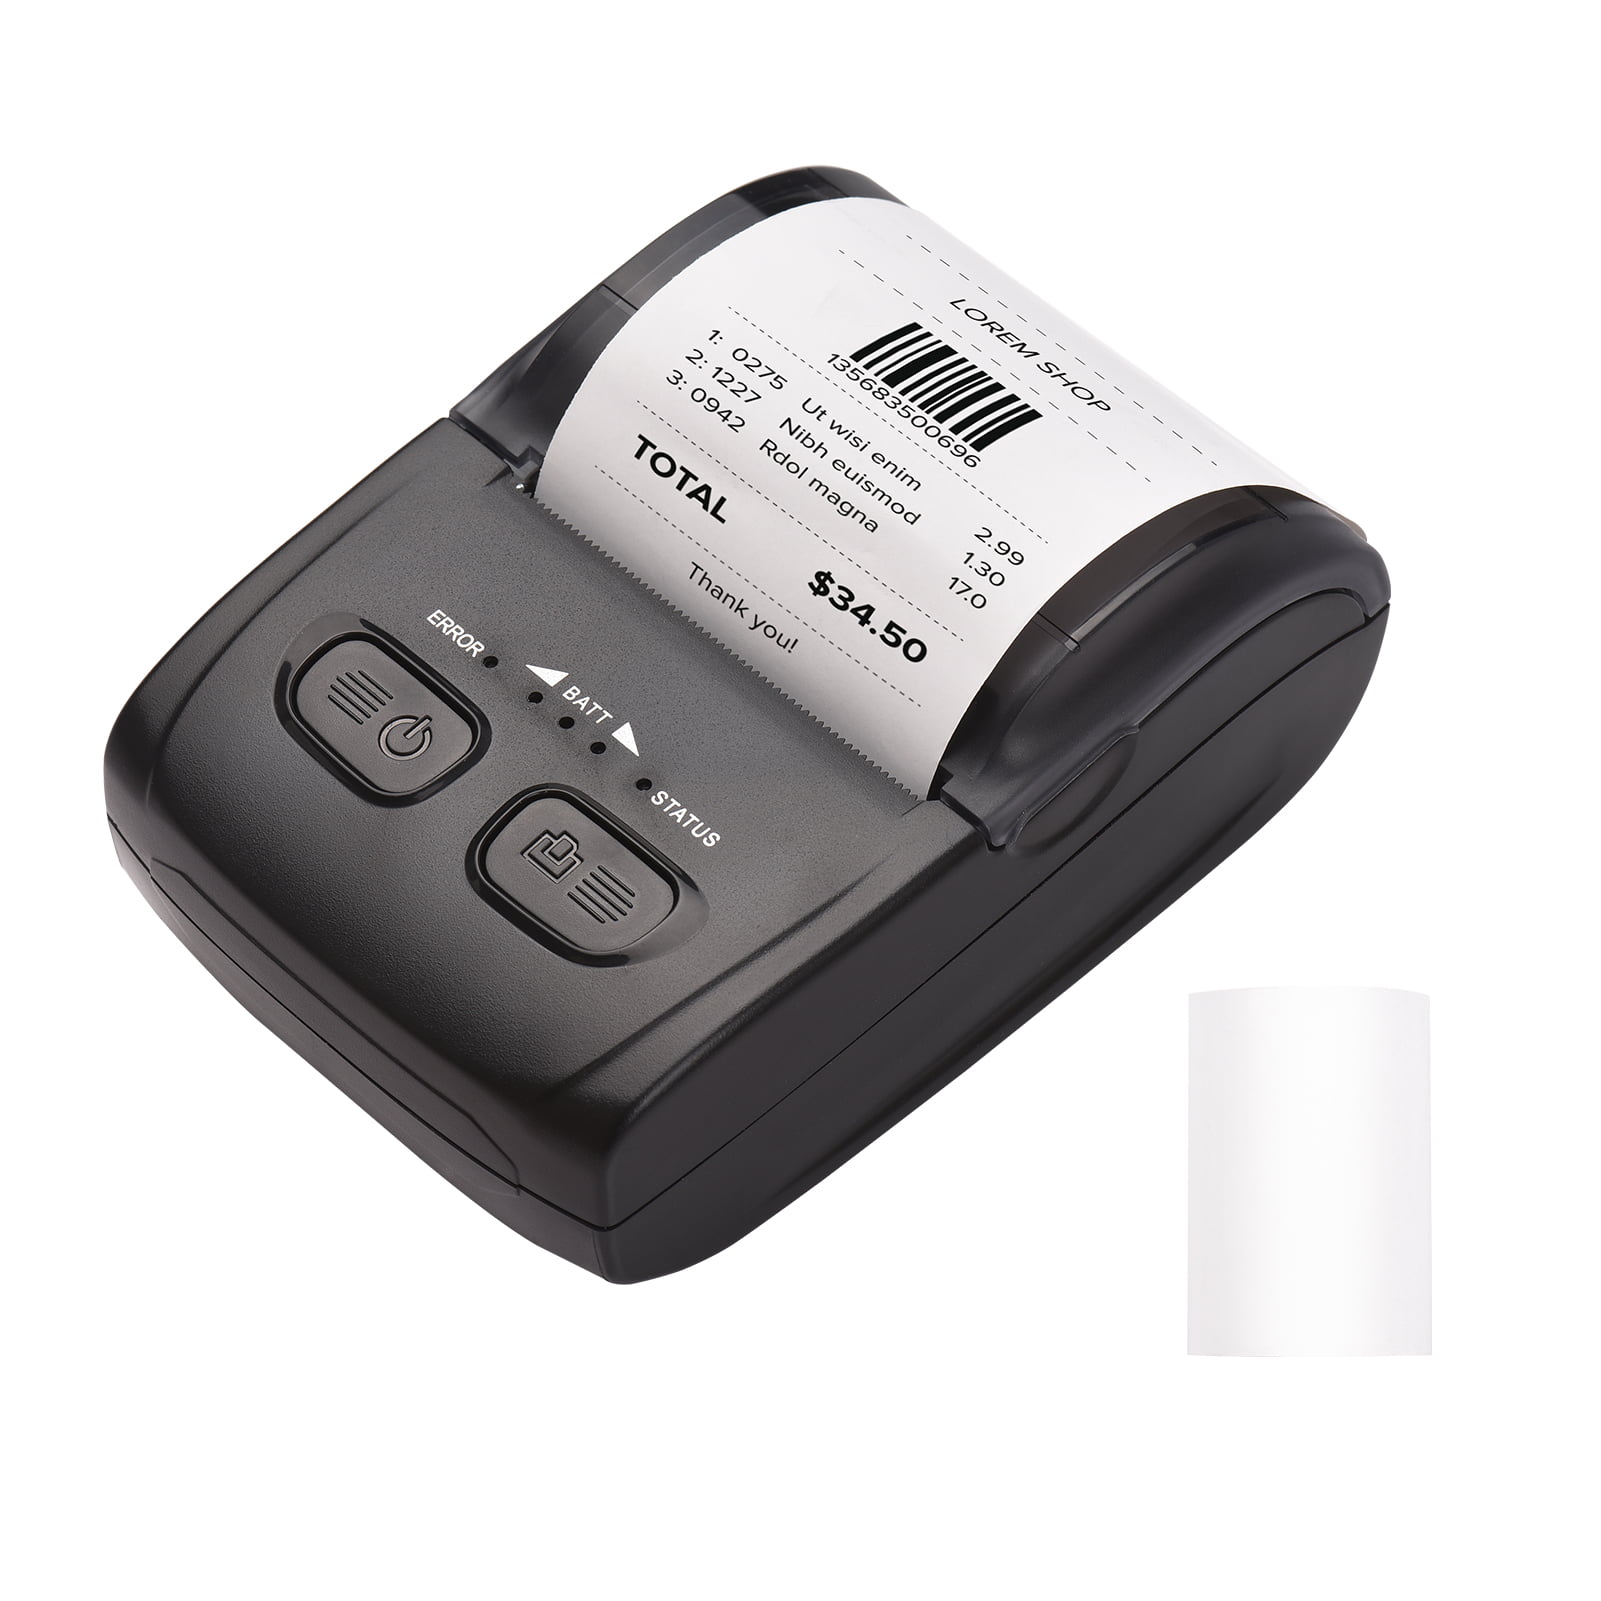 GOOJPRT HD Wireless Bluetooth Thermodrucker Foto Label Papier Etikettendrucker 